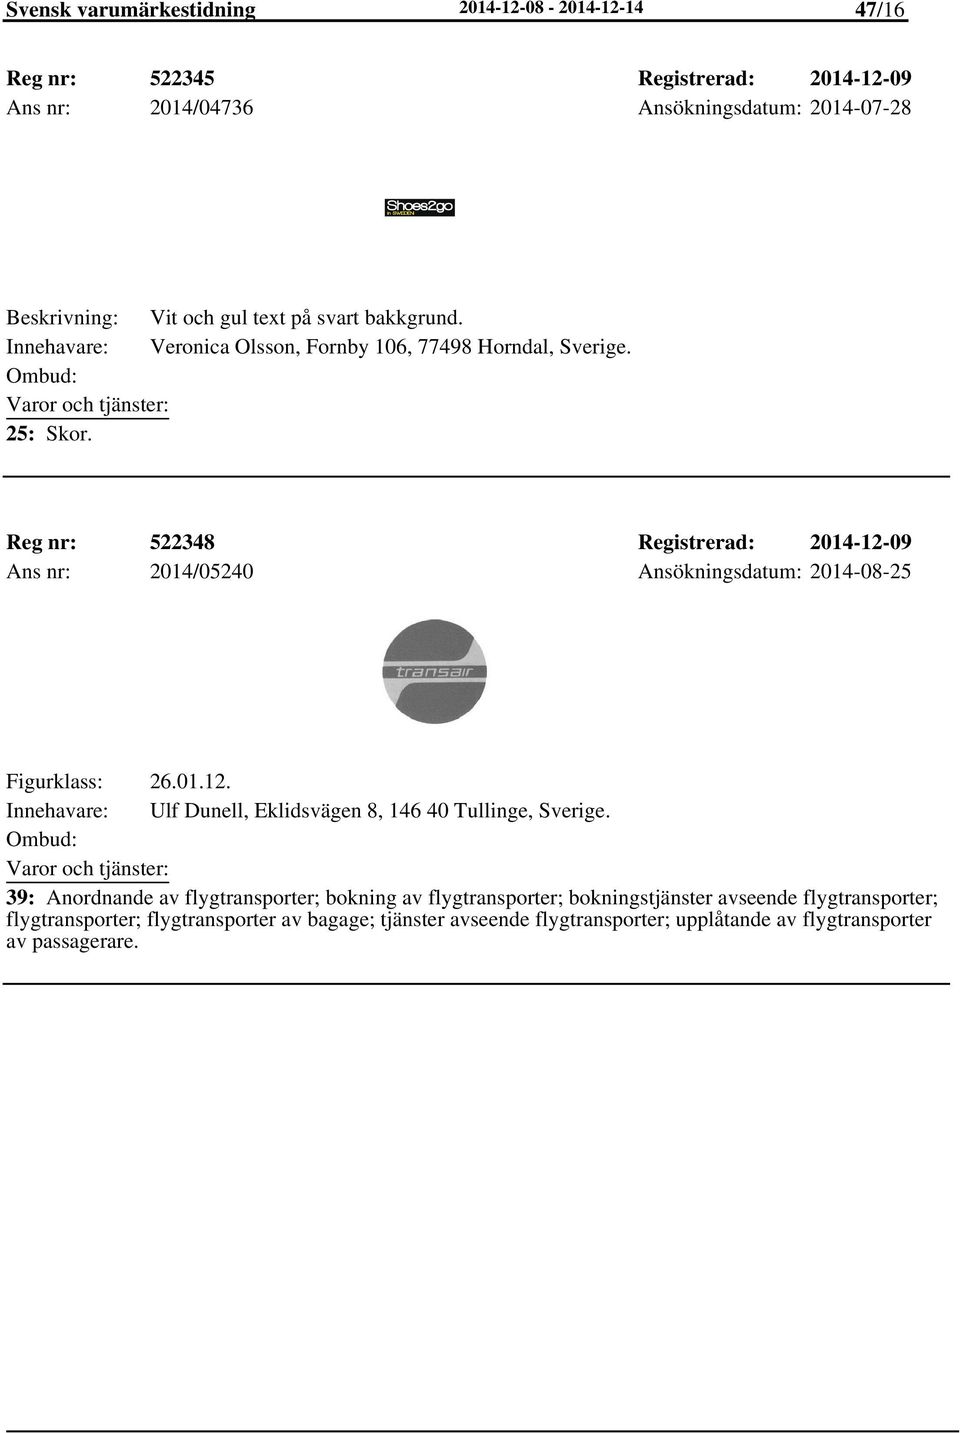 Reg nr: 522348 Registrerad: 2014-12-09 Ans nr: 2014/05240 Ansökningsdatum: 2014-08-25 Figurklass: 26.01.12. Ulf Dunell, Eklidsvägen 8, 146 40 Tullinge, Sverige.